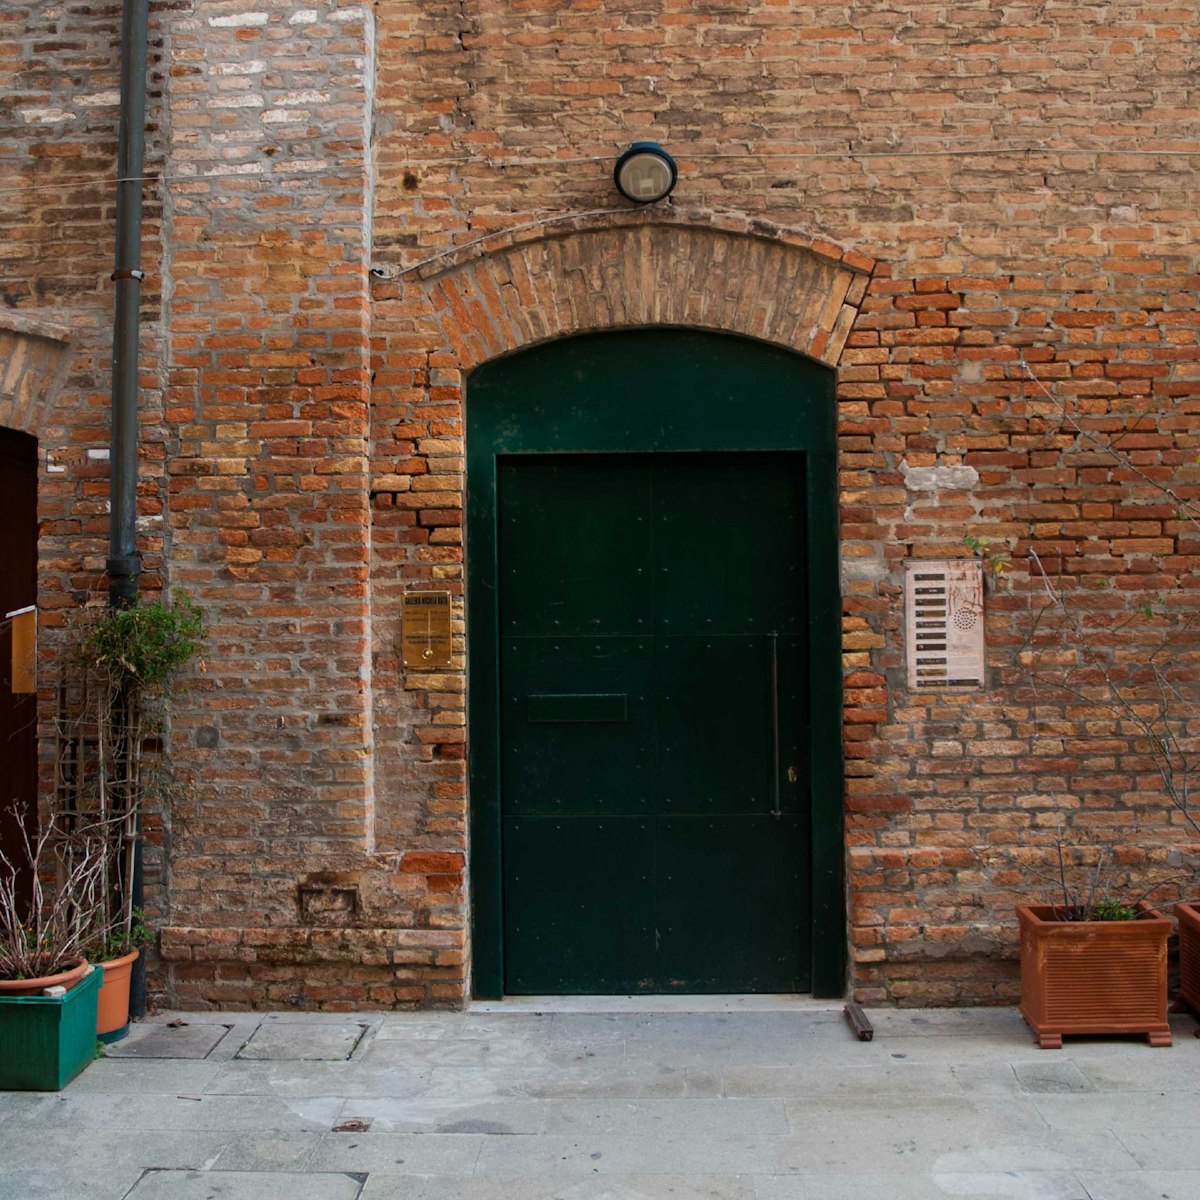 The unassuming entrance to Galleria Michela Rizzo